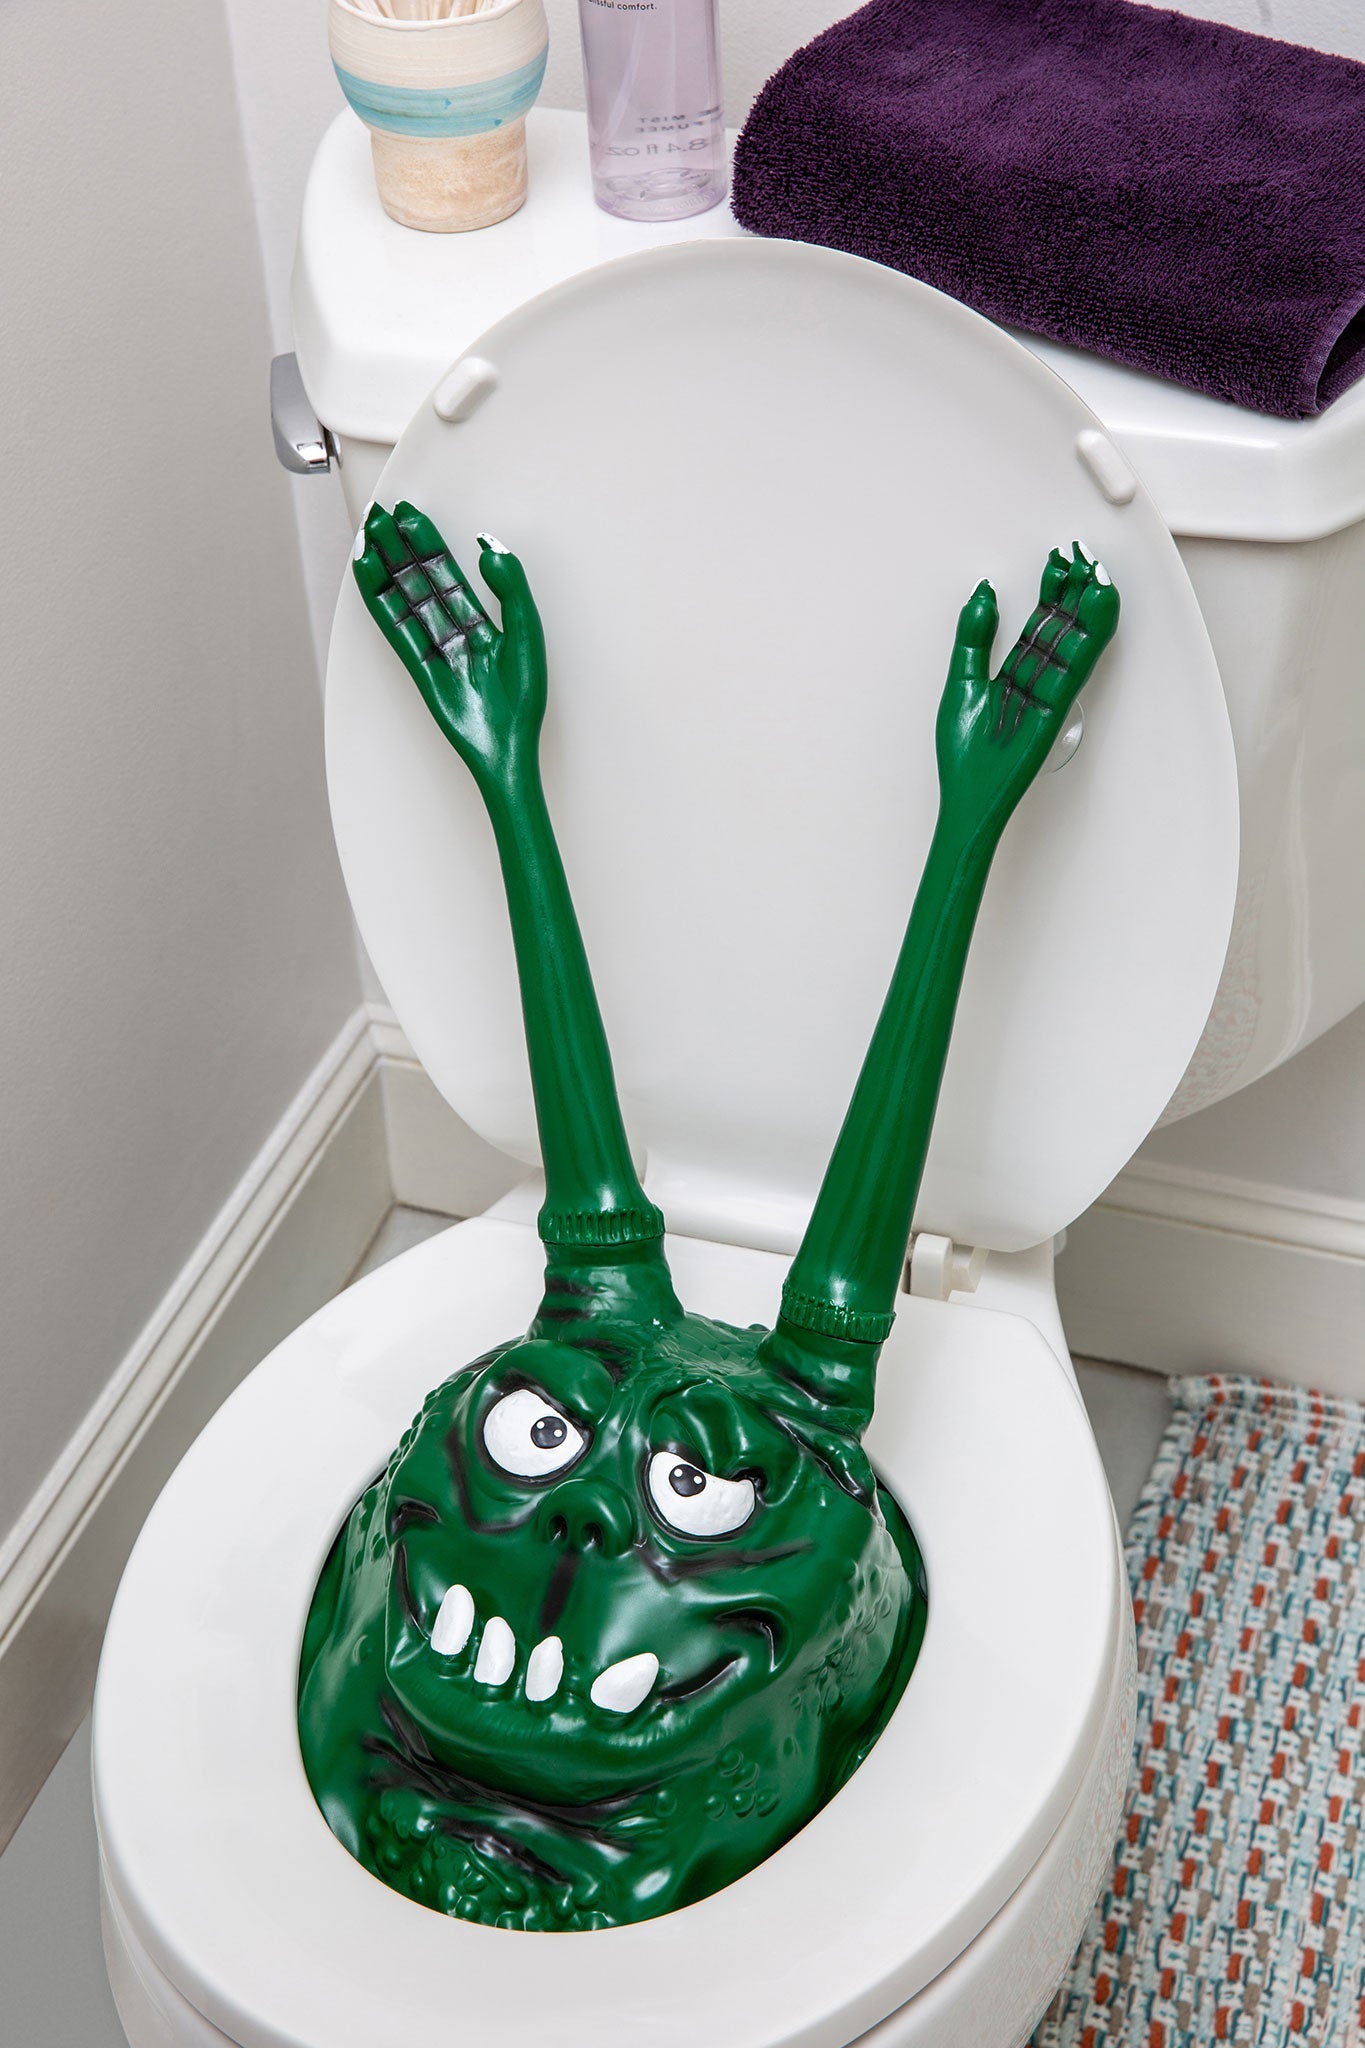 Snake Toilet Bowl Monster - Hisss-terically funny! Bathroom Scary Gag Prank  Joke